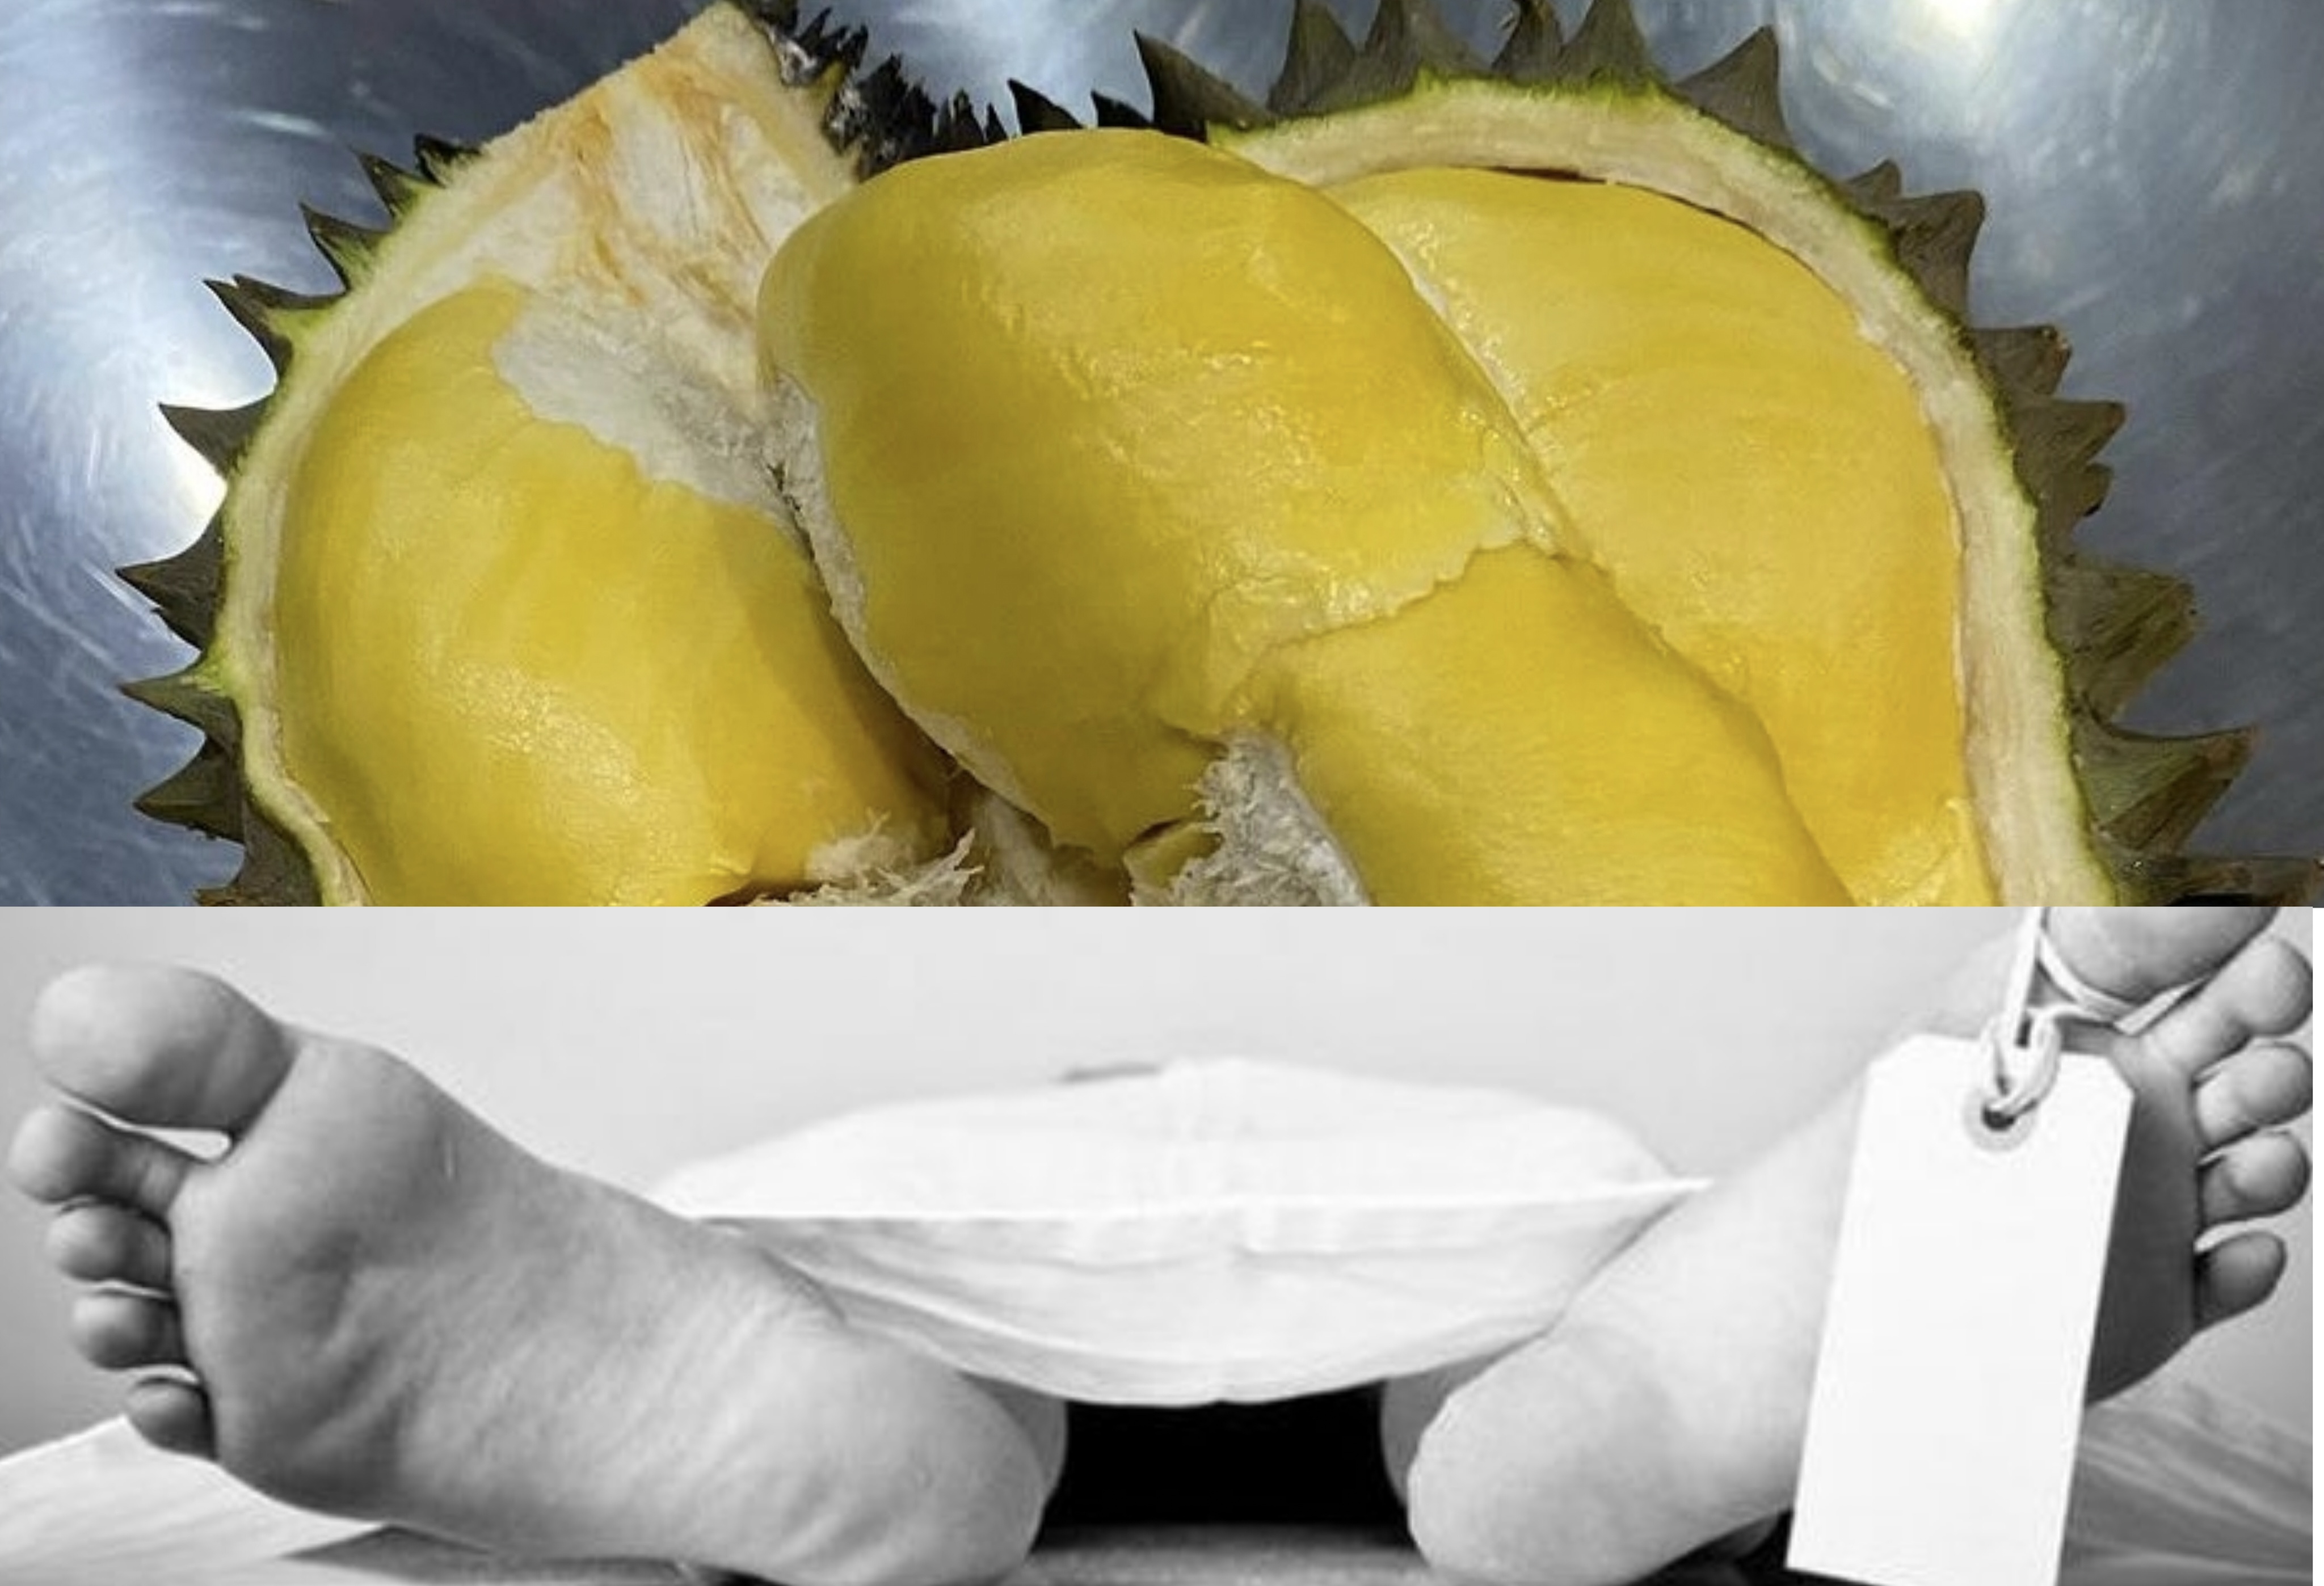 Pria di Banyumas Dijemput Ajal Gegara Makan 5 Buah Durian Sendirian